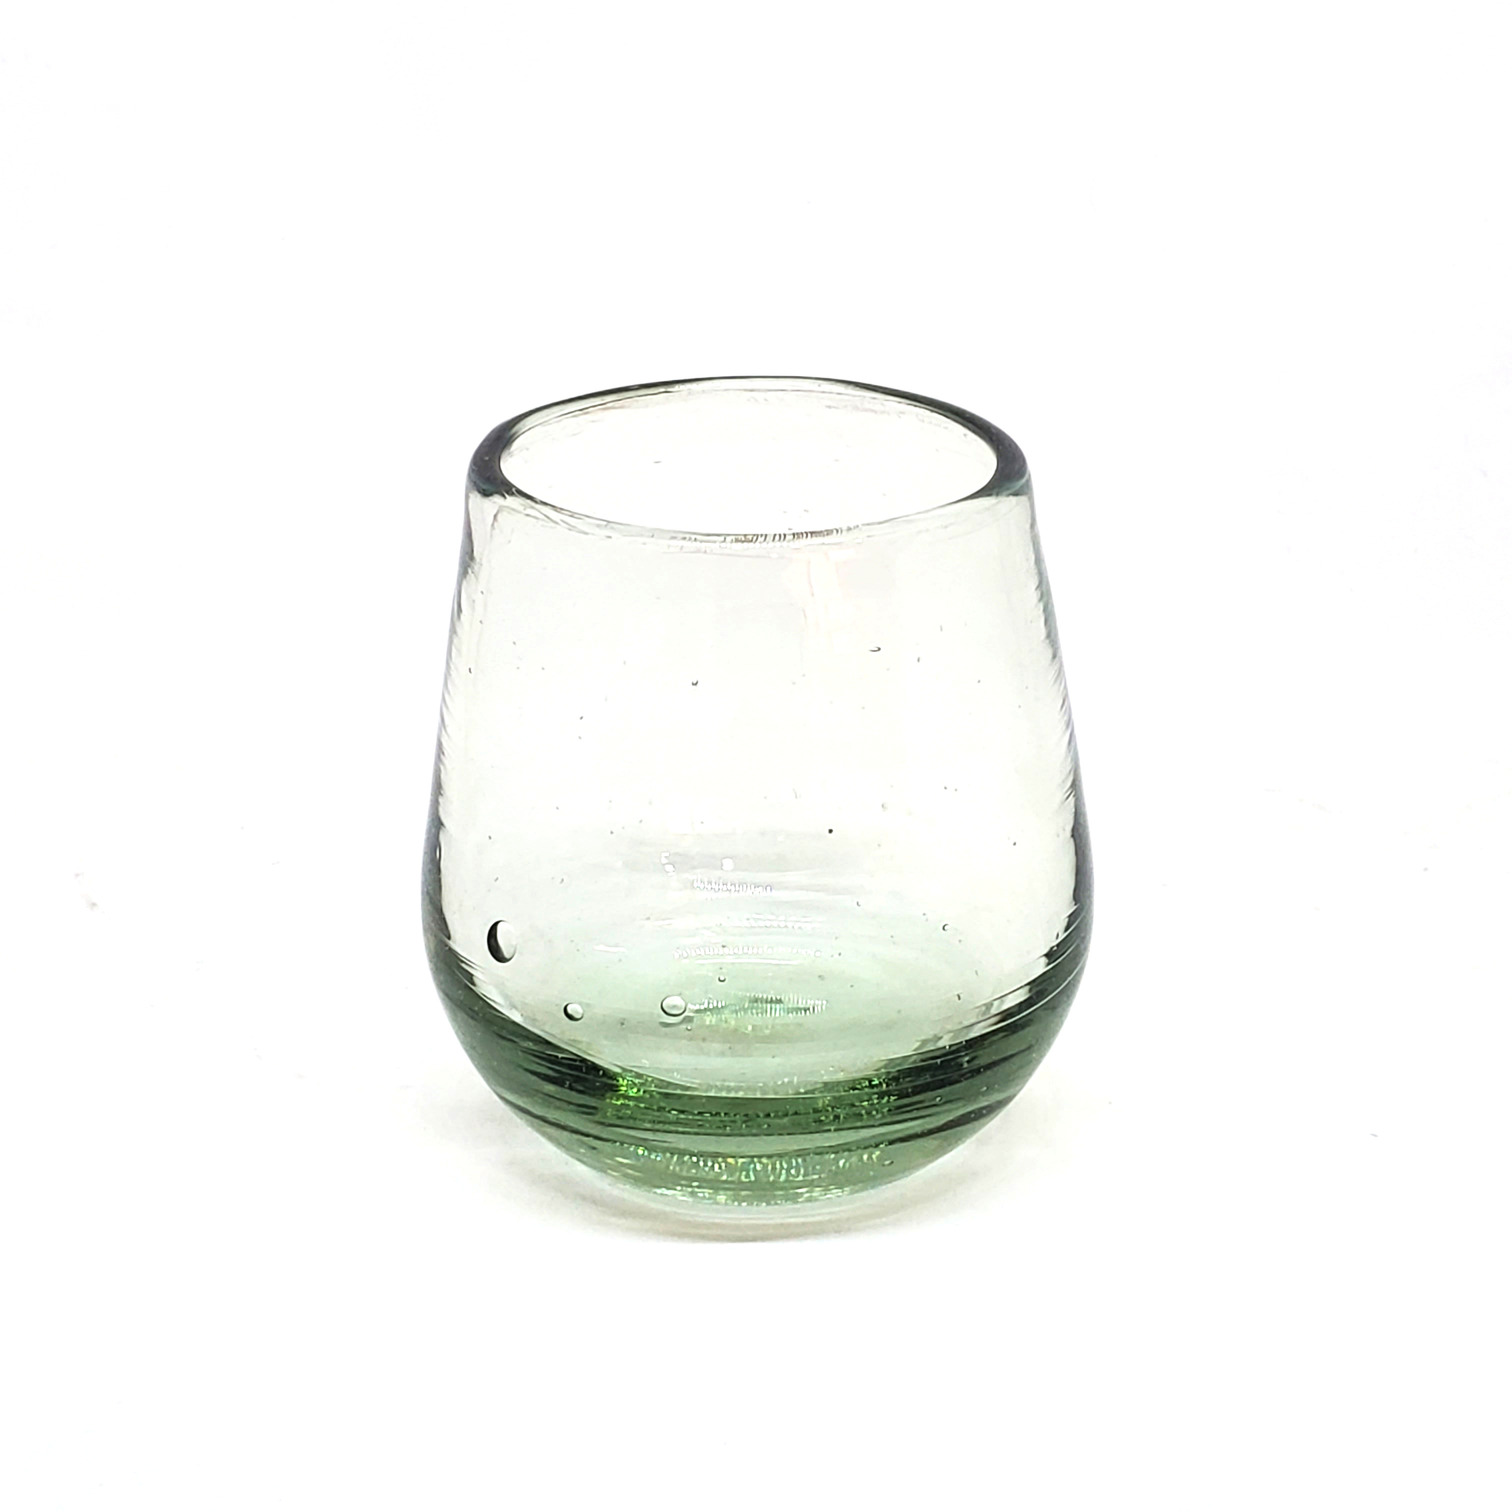 VIDRIO SOPLADO / Vasos Roly Poly Transparente (Juego de 6) / Nuestros vasos transparentes son fabricados uno por uno a base de vidrio reciclado, haciéndolos obras de arte únicas.